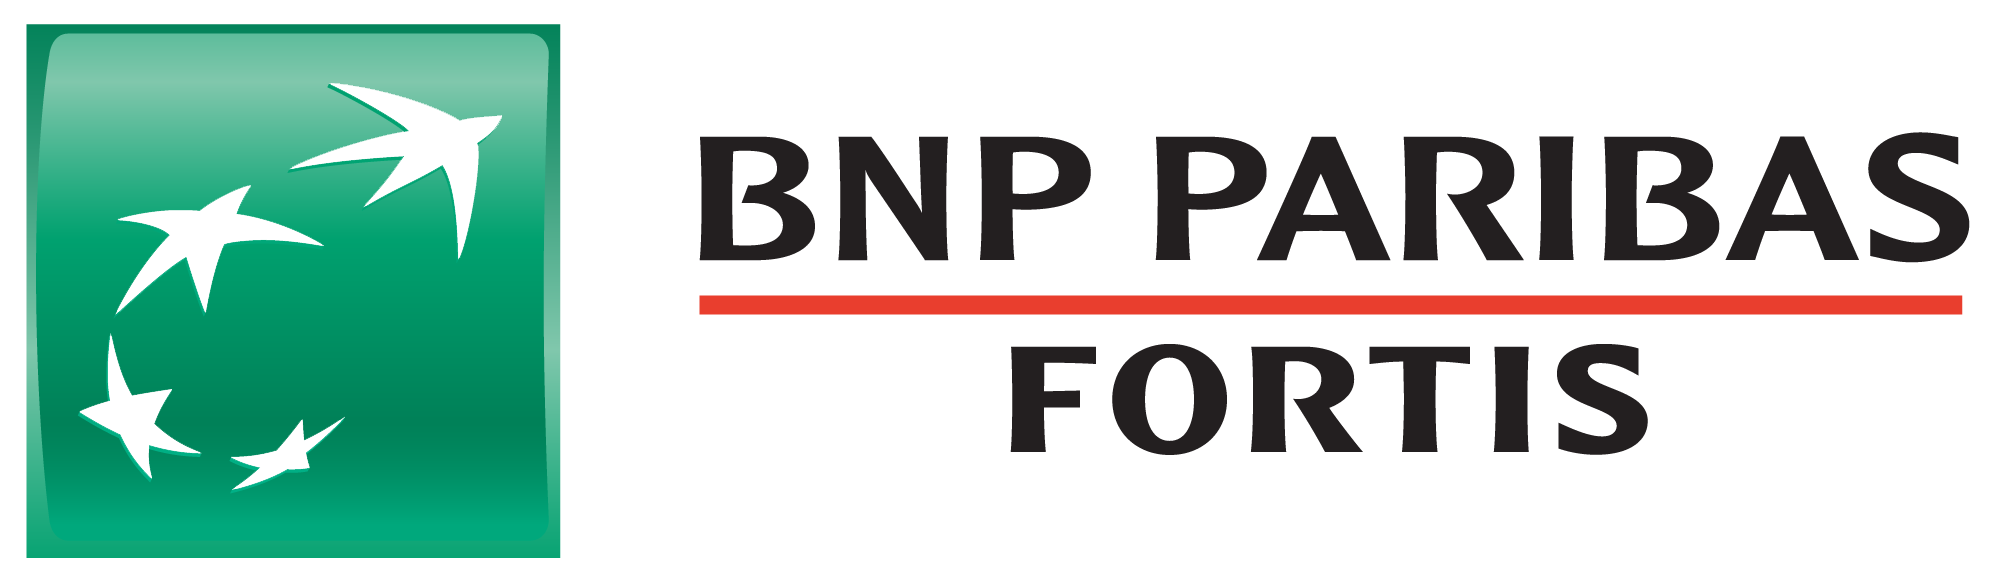 BNP FORTIS : Brand Short Description Type Here.